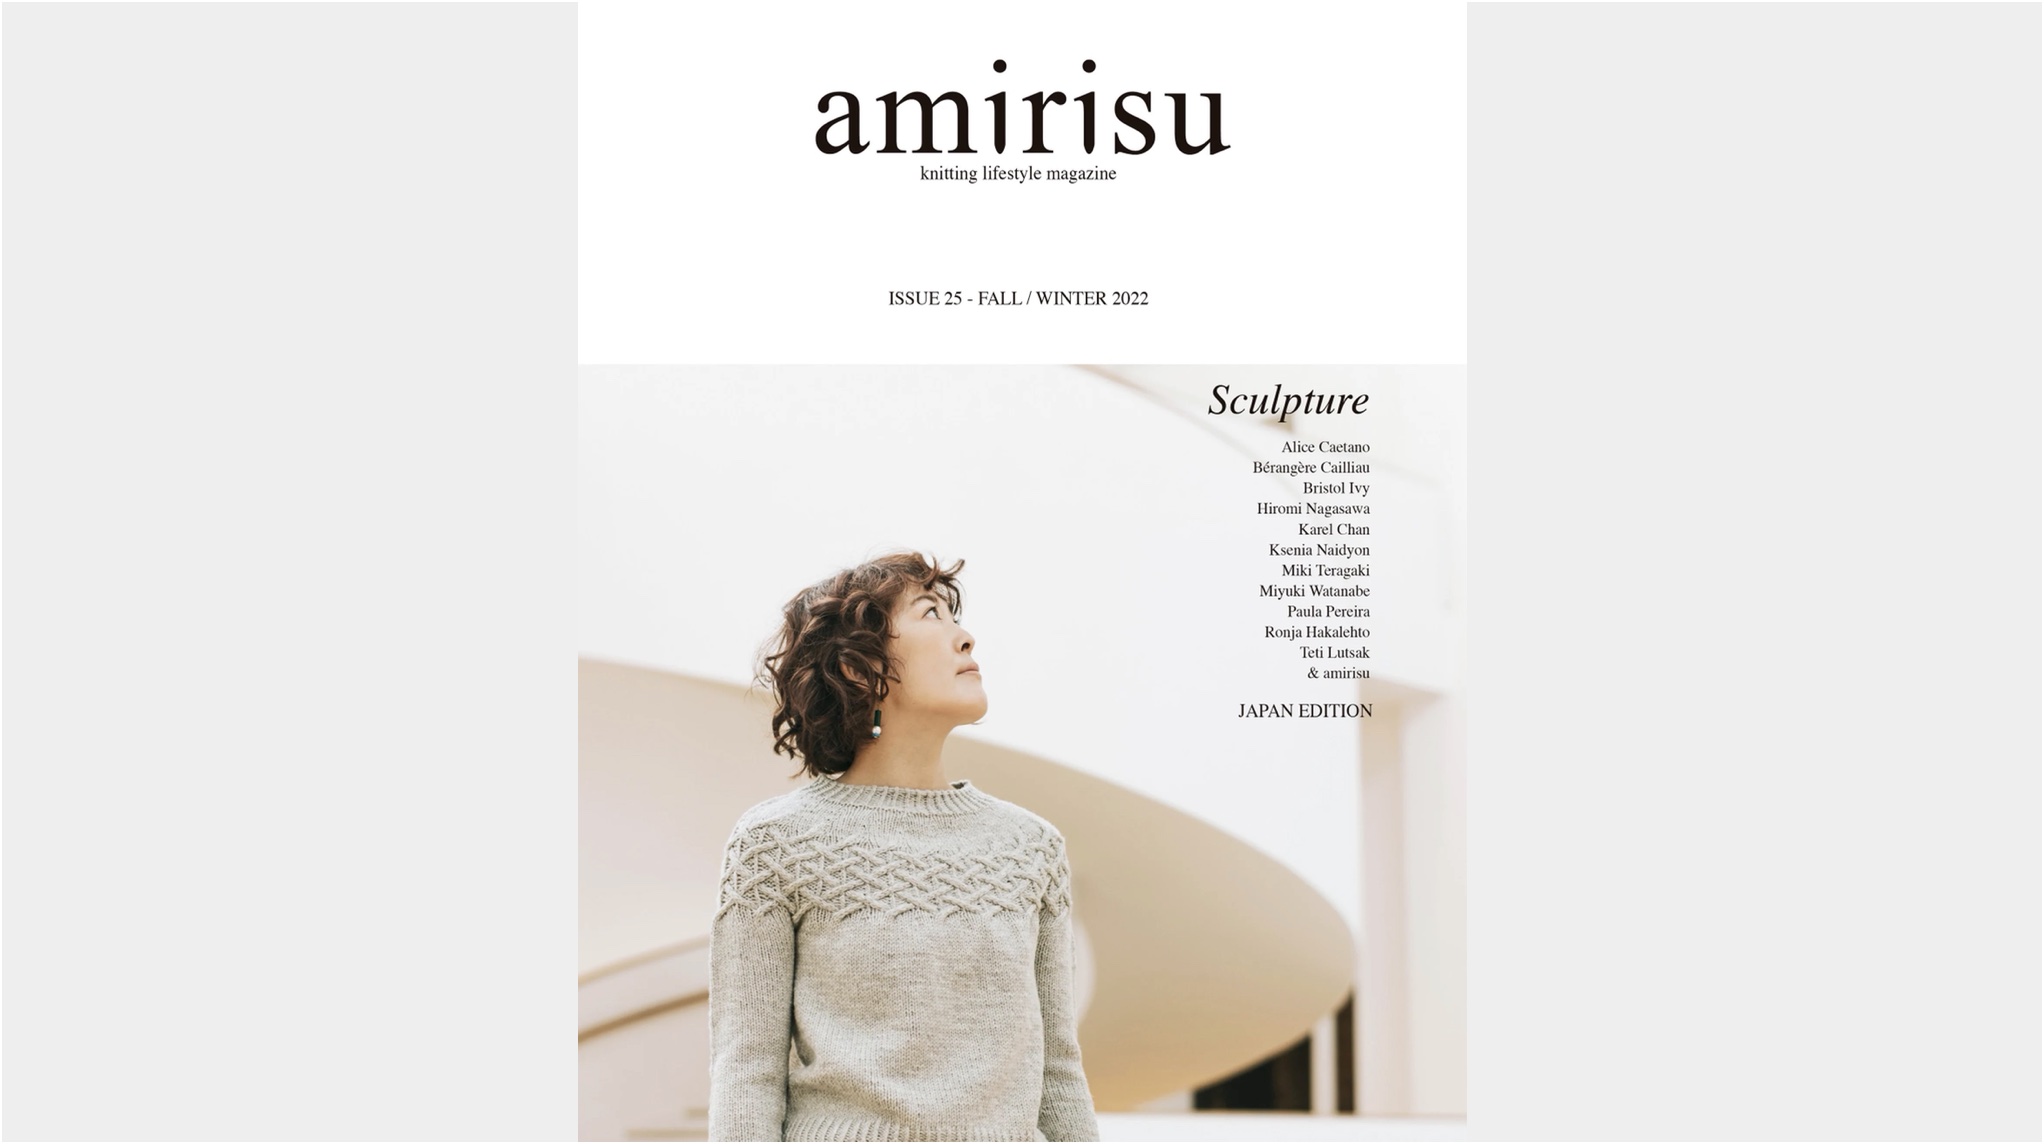 【メディア掲載情報】11月9日発売「AMIRISU ISSUE 25」記事掲載のお知らせ